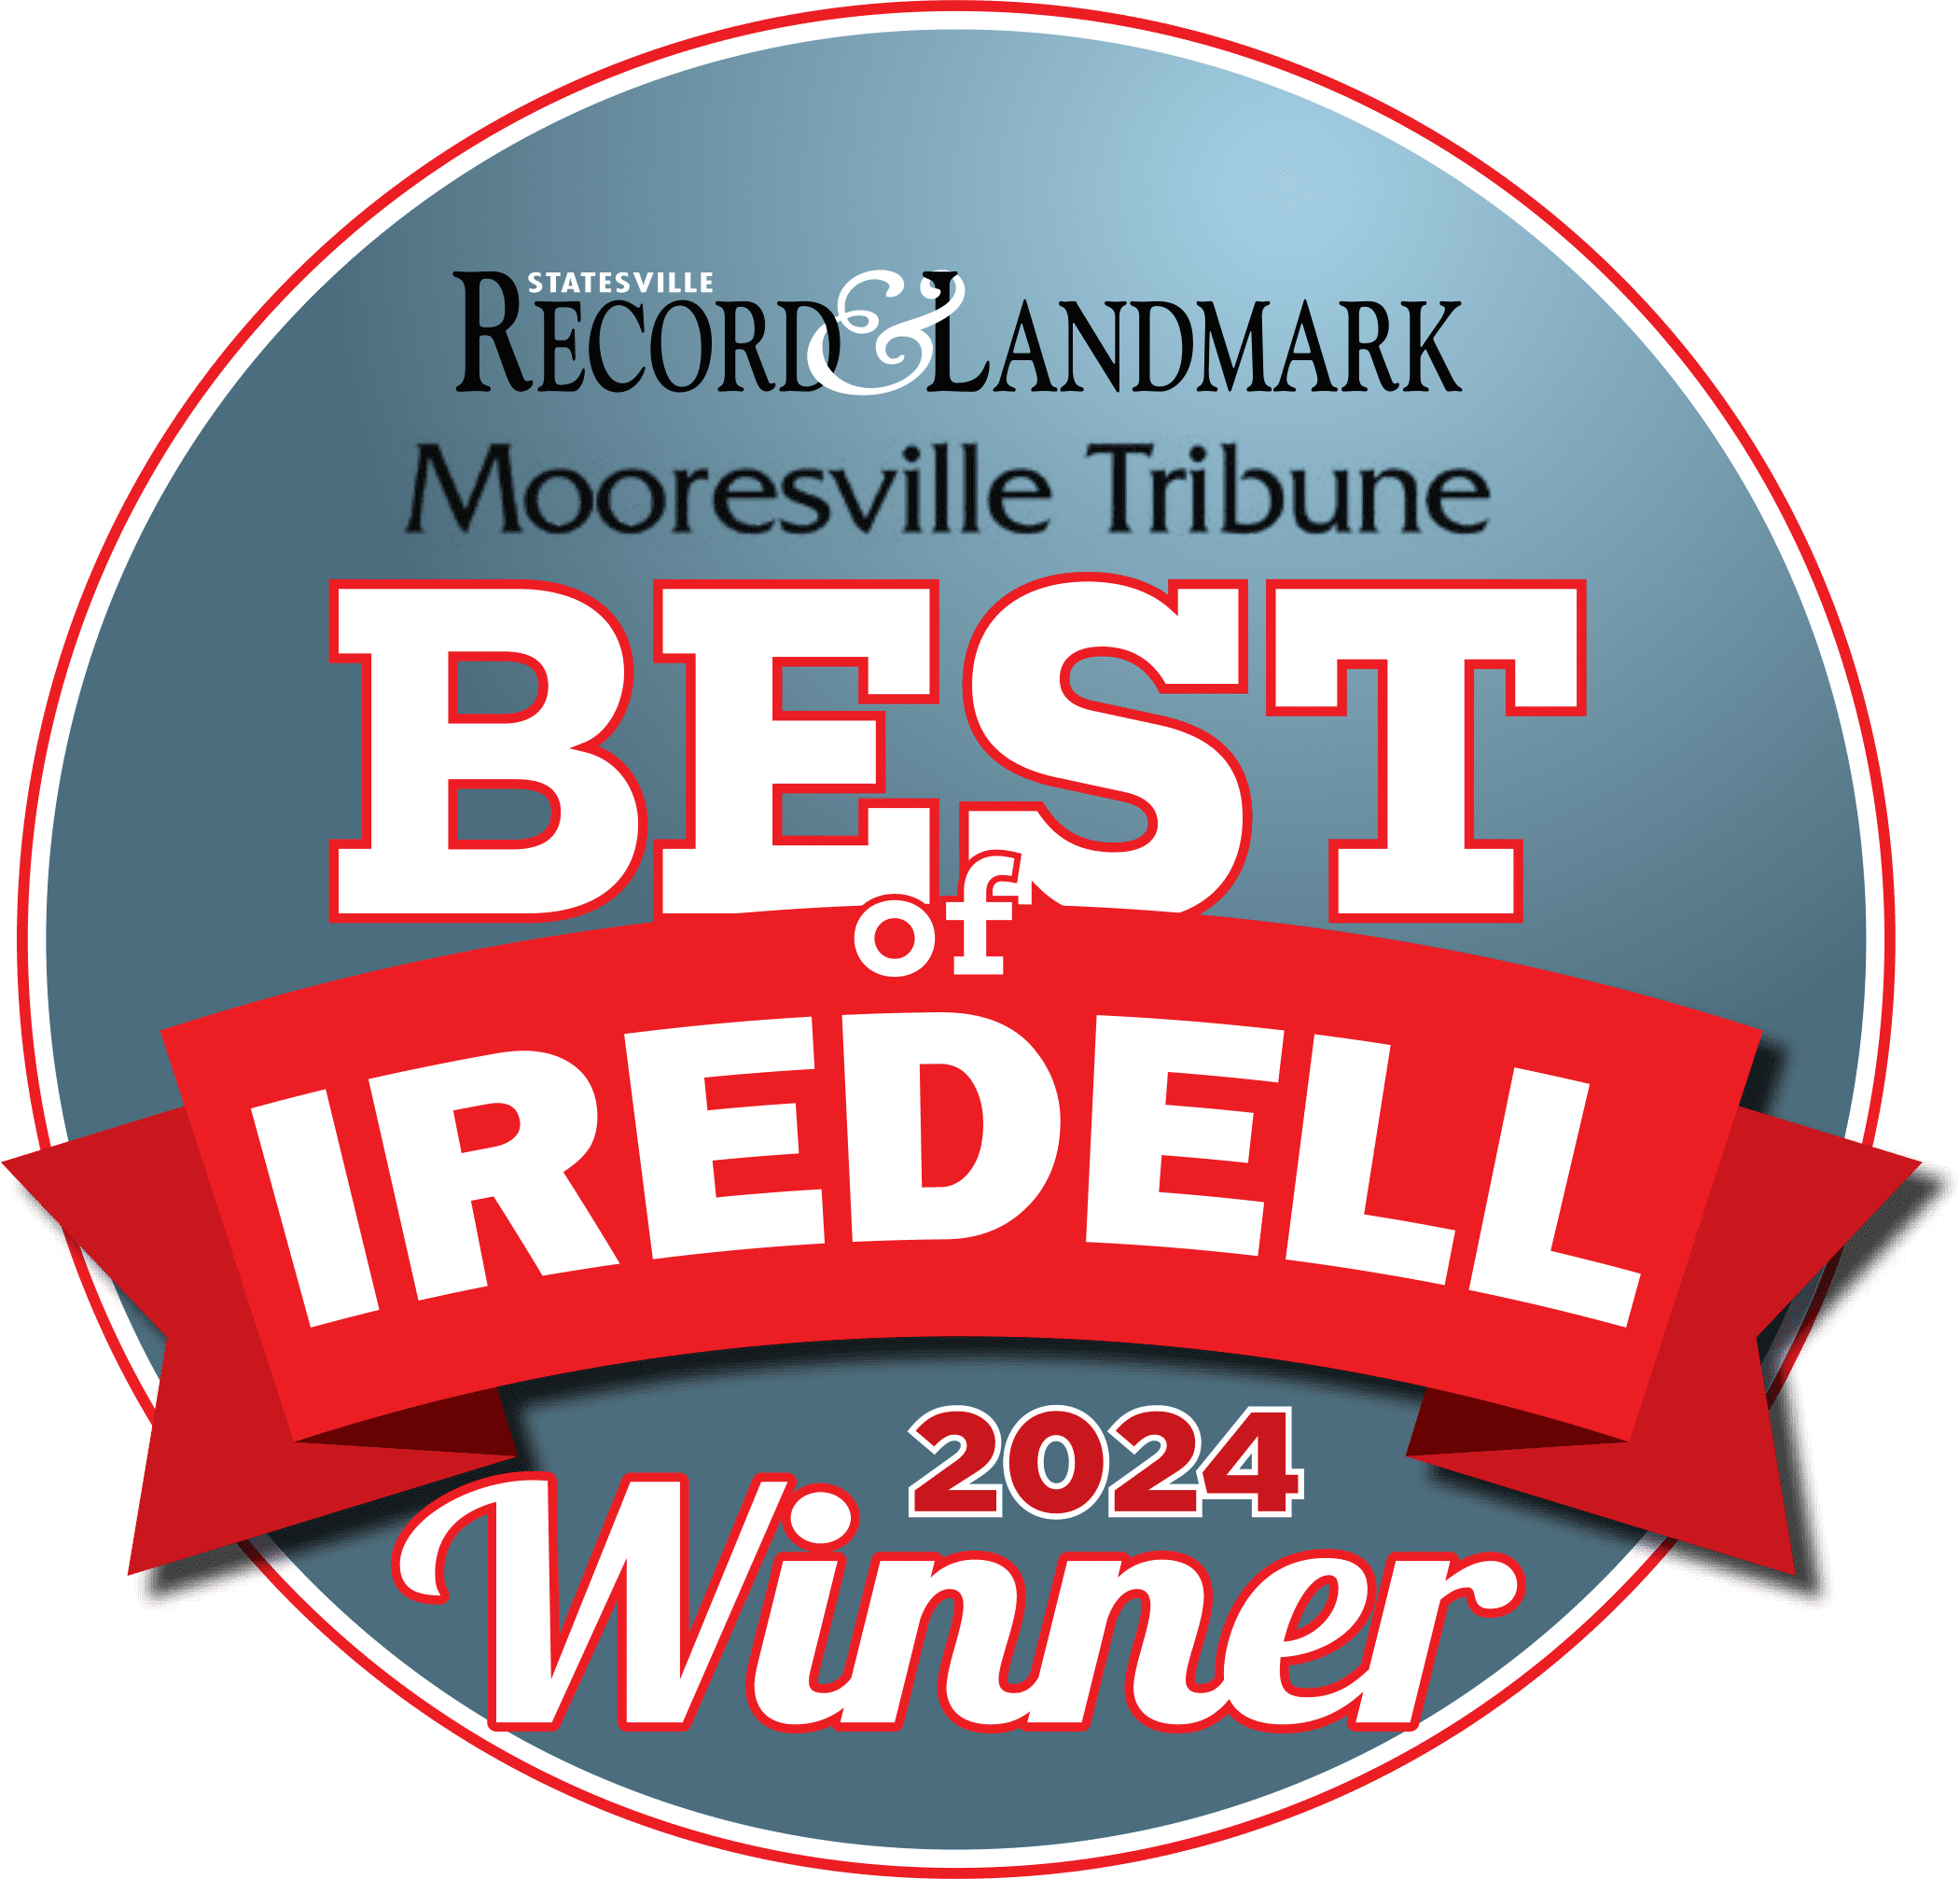 Best of Tredell 2022 winner logo